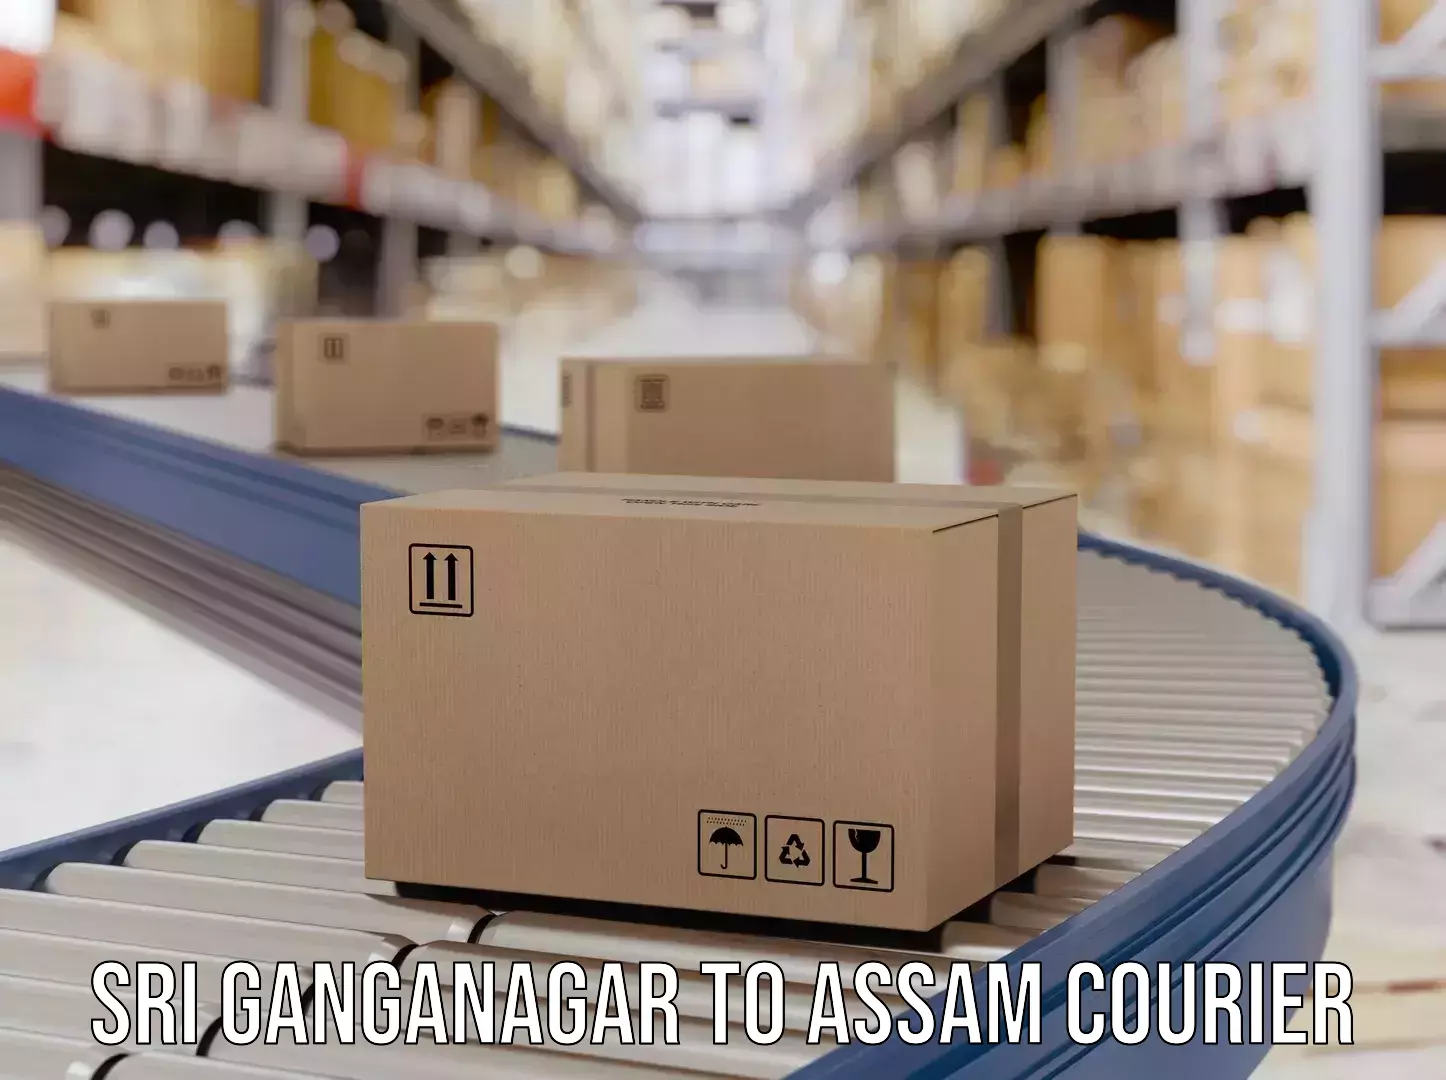 Next-generation courier services Sri Ganganagar to Darranga Mela